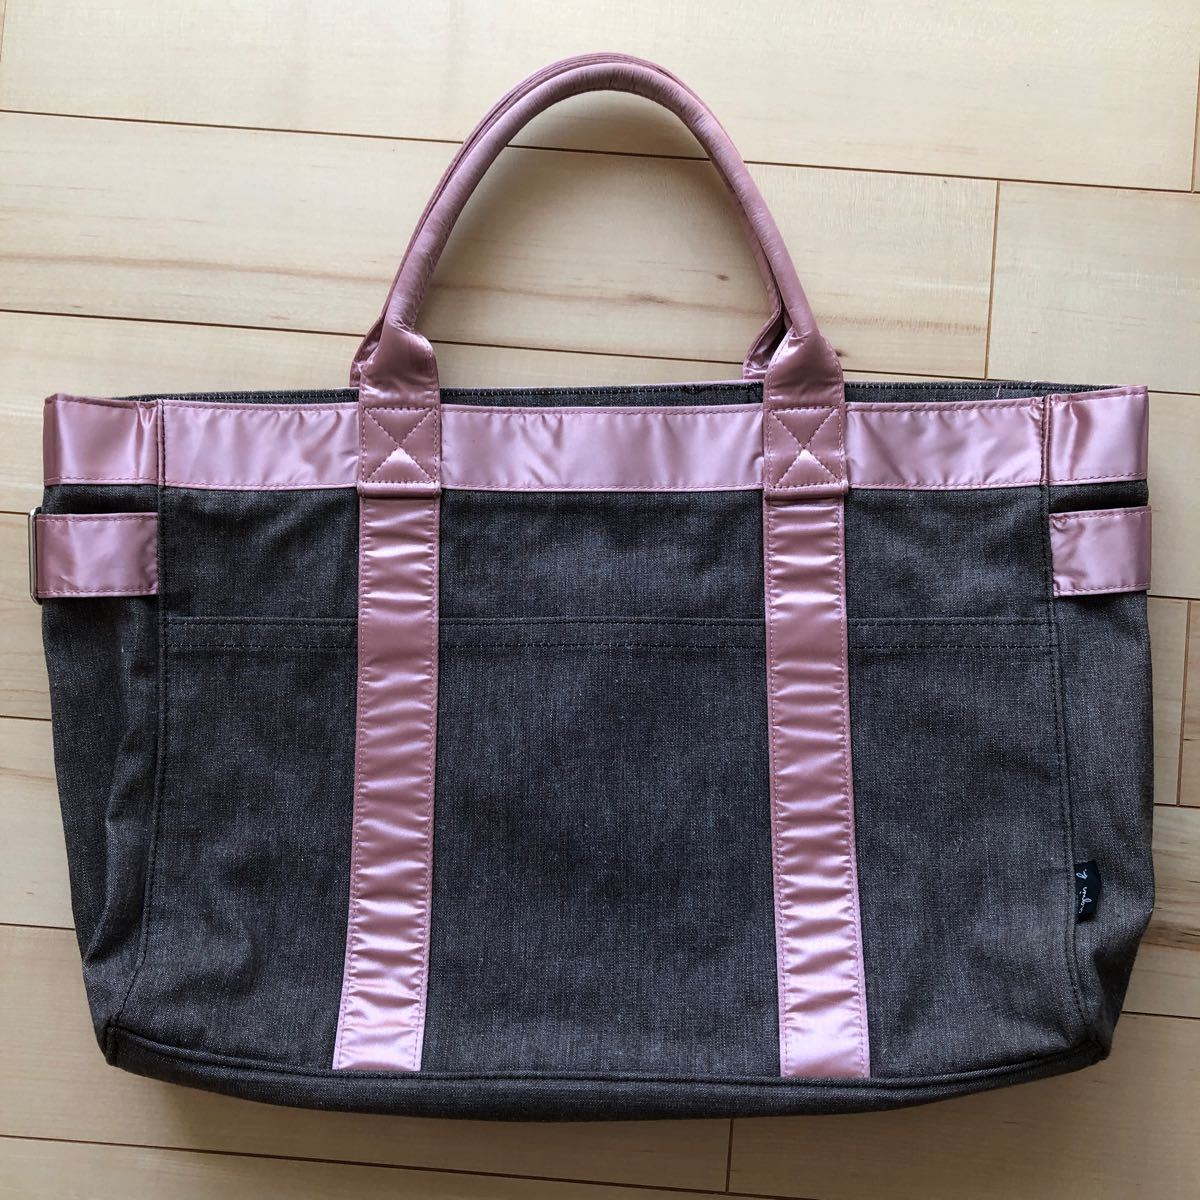  Agnes B bag tote bag pink used